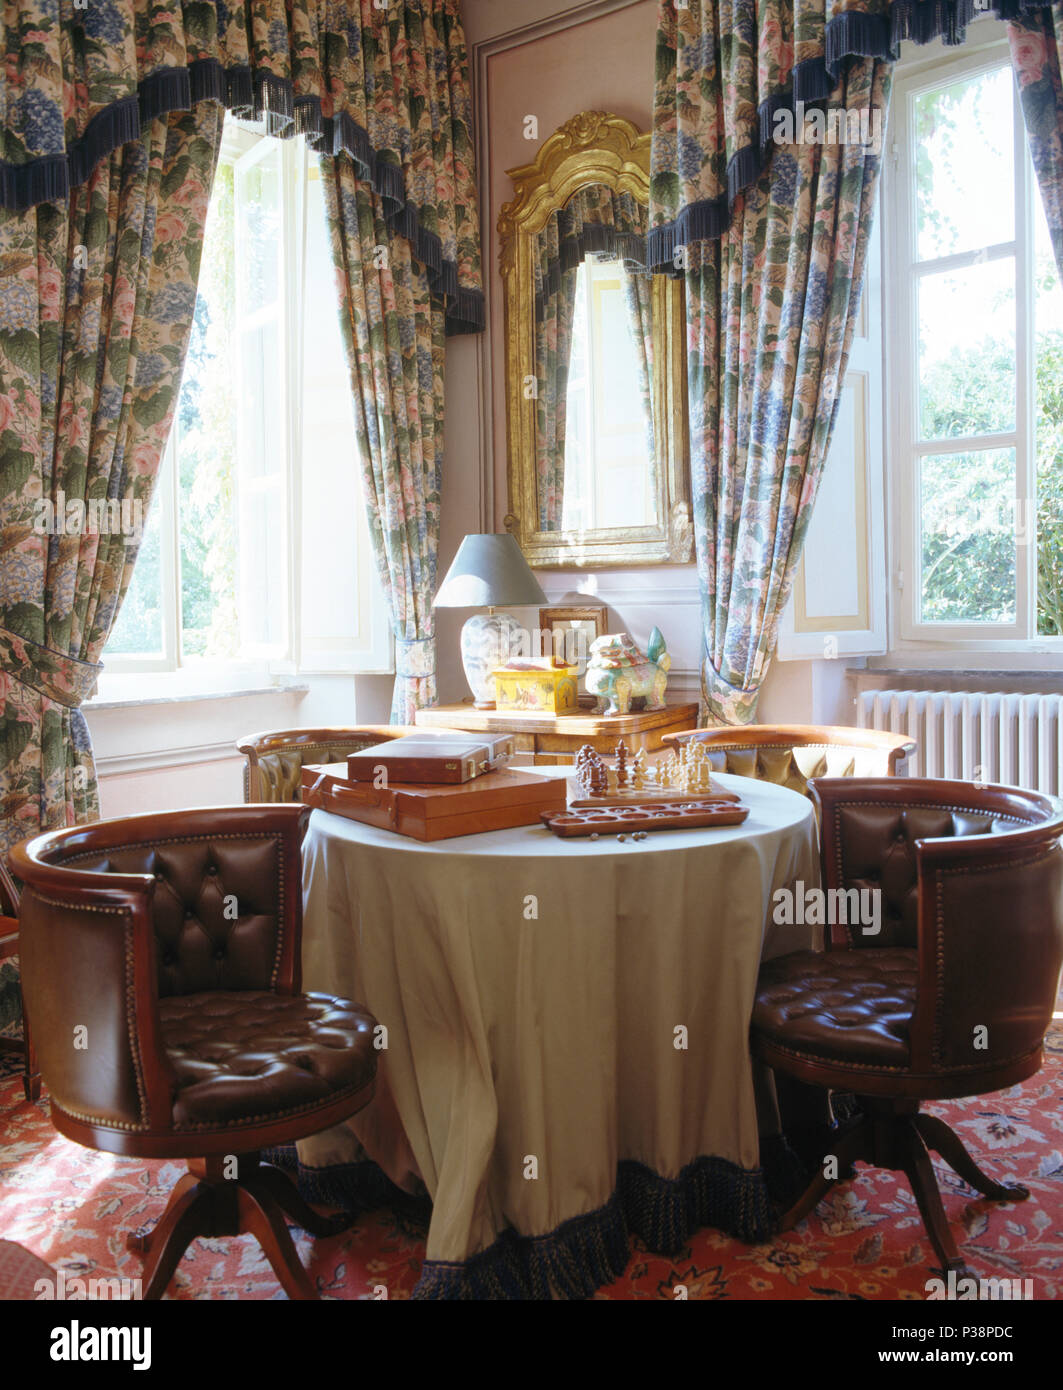 Bouton cuir-fauteuils retour à table avec jeu d'échec en face de la fenêtre avec des rideaux bleus Banque D'Images